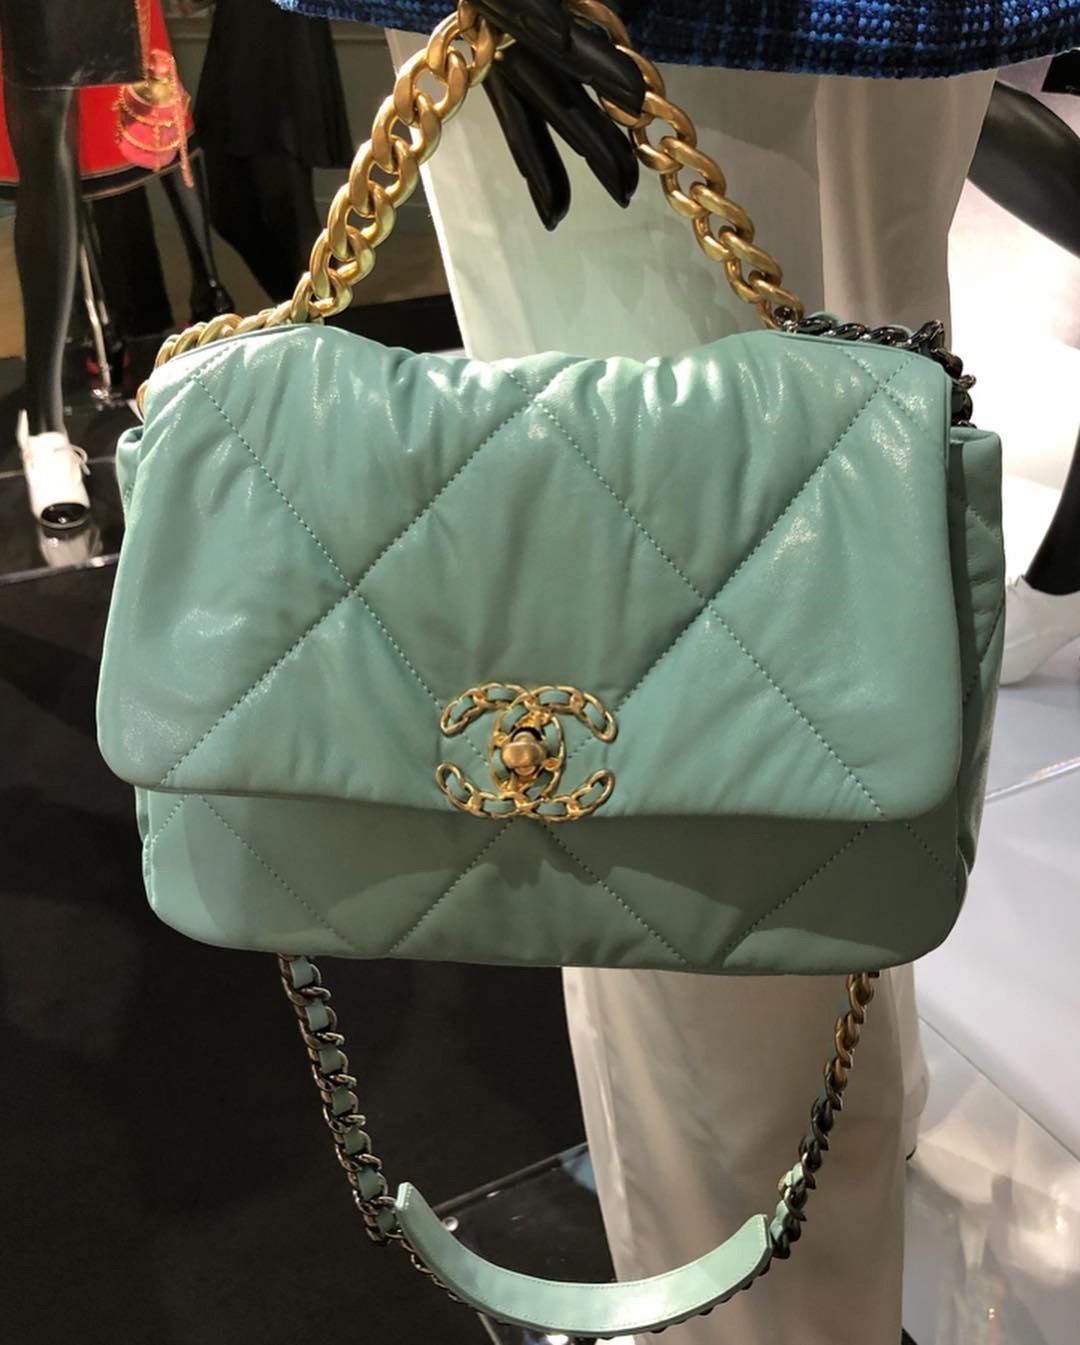 Chanel Cruise 2020 Bag Preview | Bragmybag